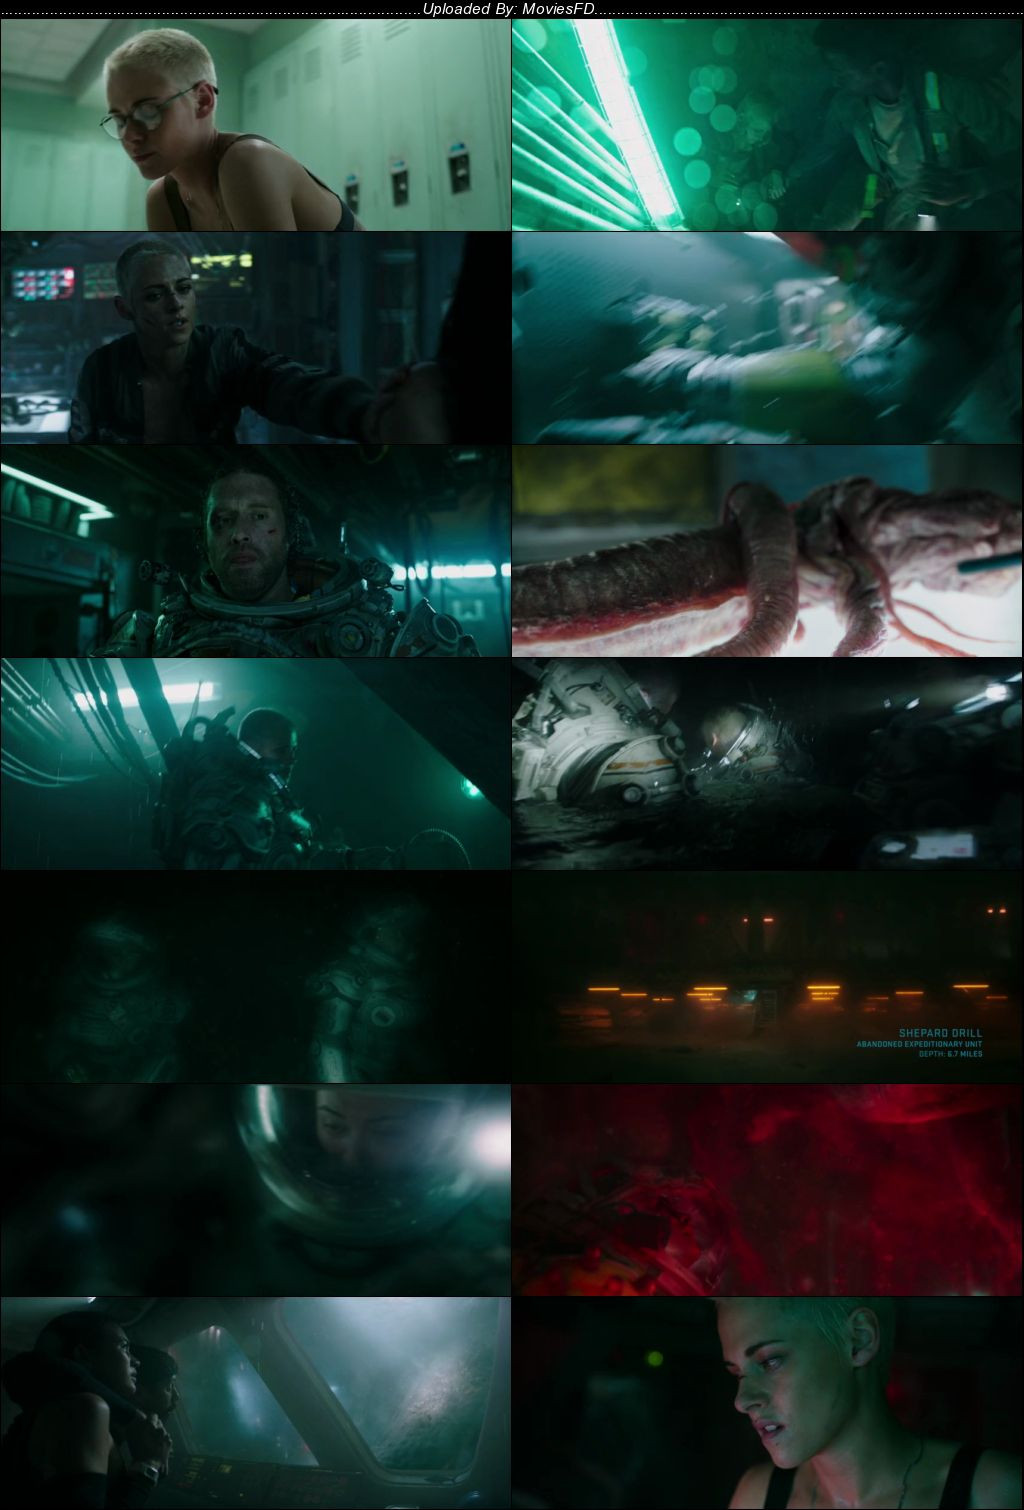 Download Underwater (2020) BluRay [Hindi + English] ESub 480p 720p